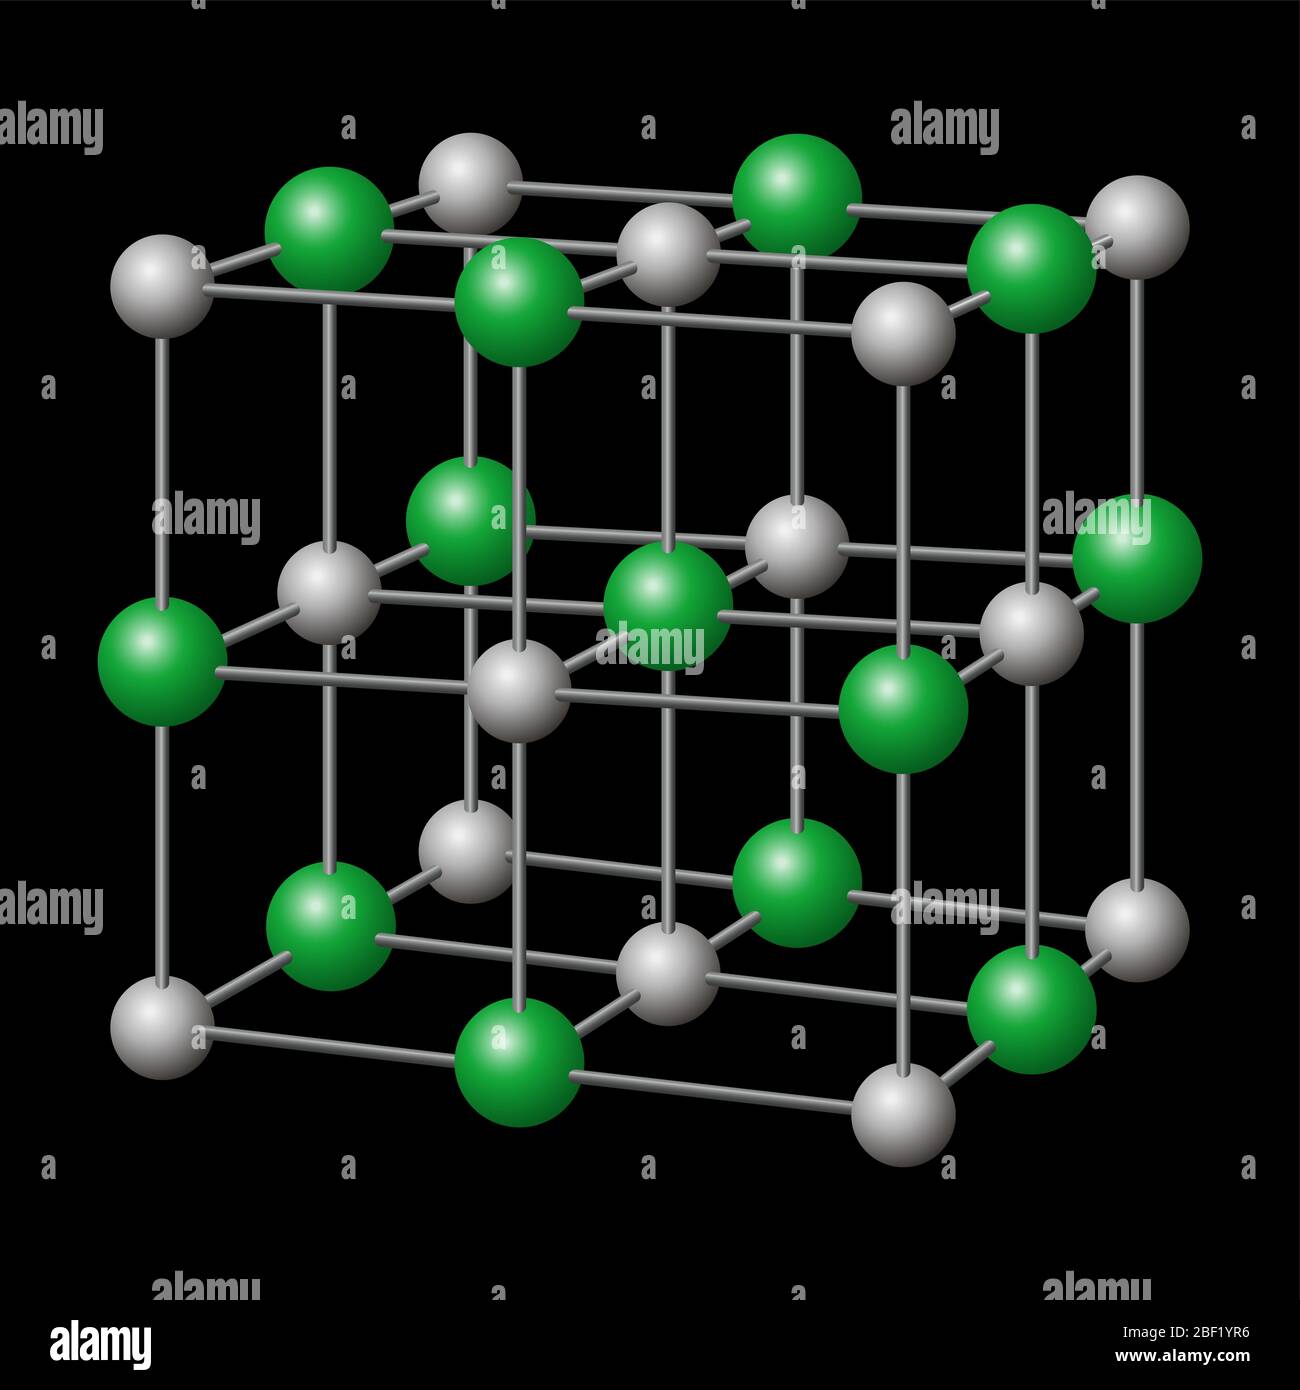 Natriumchlorid, NaCl Kristallstruktur mit Natrium in grau und Chlorid in grün. Chemische Verbindung, essbar als Kochsalz. Stockfoto